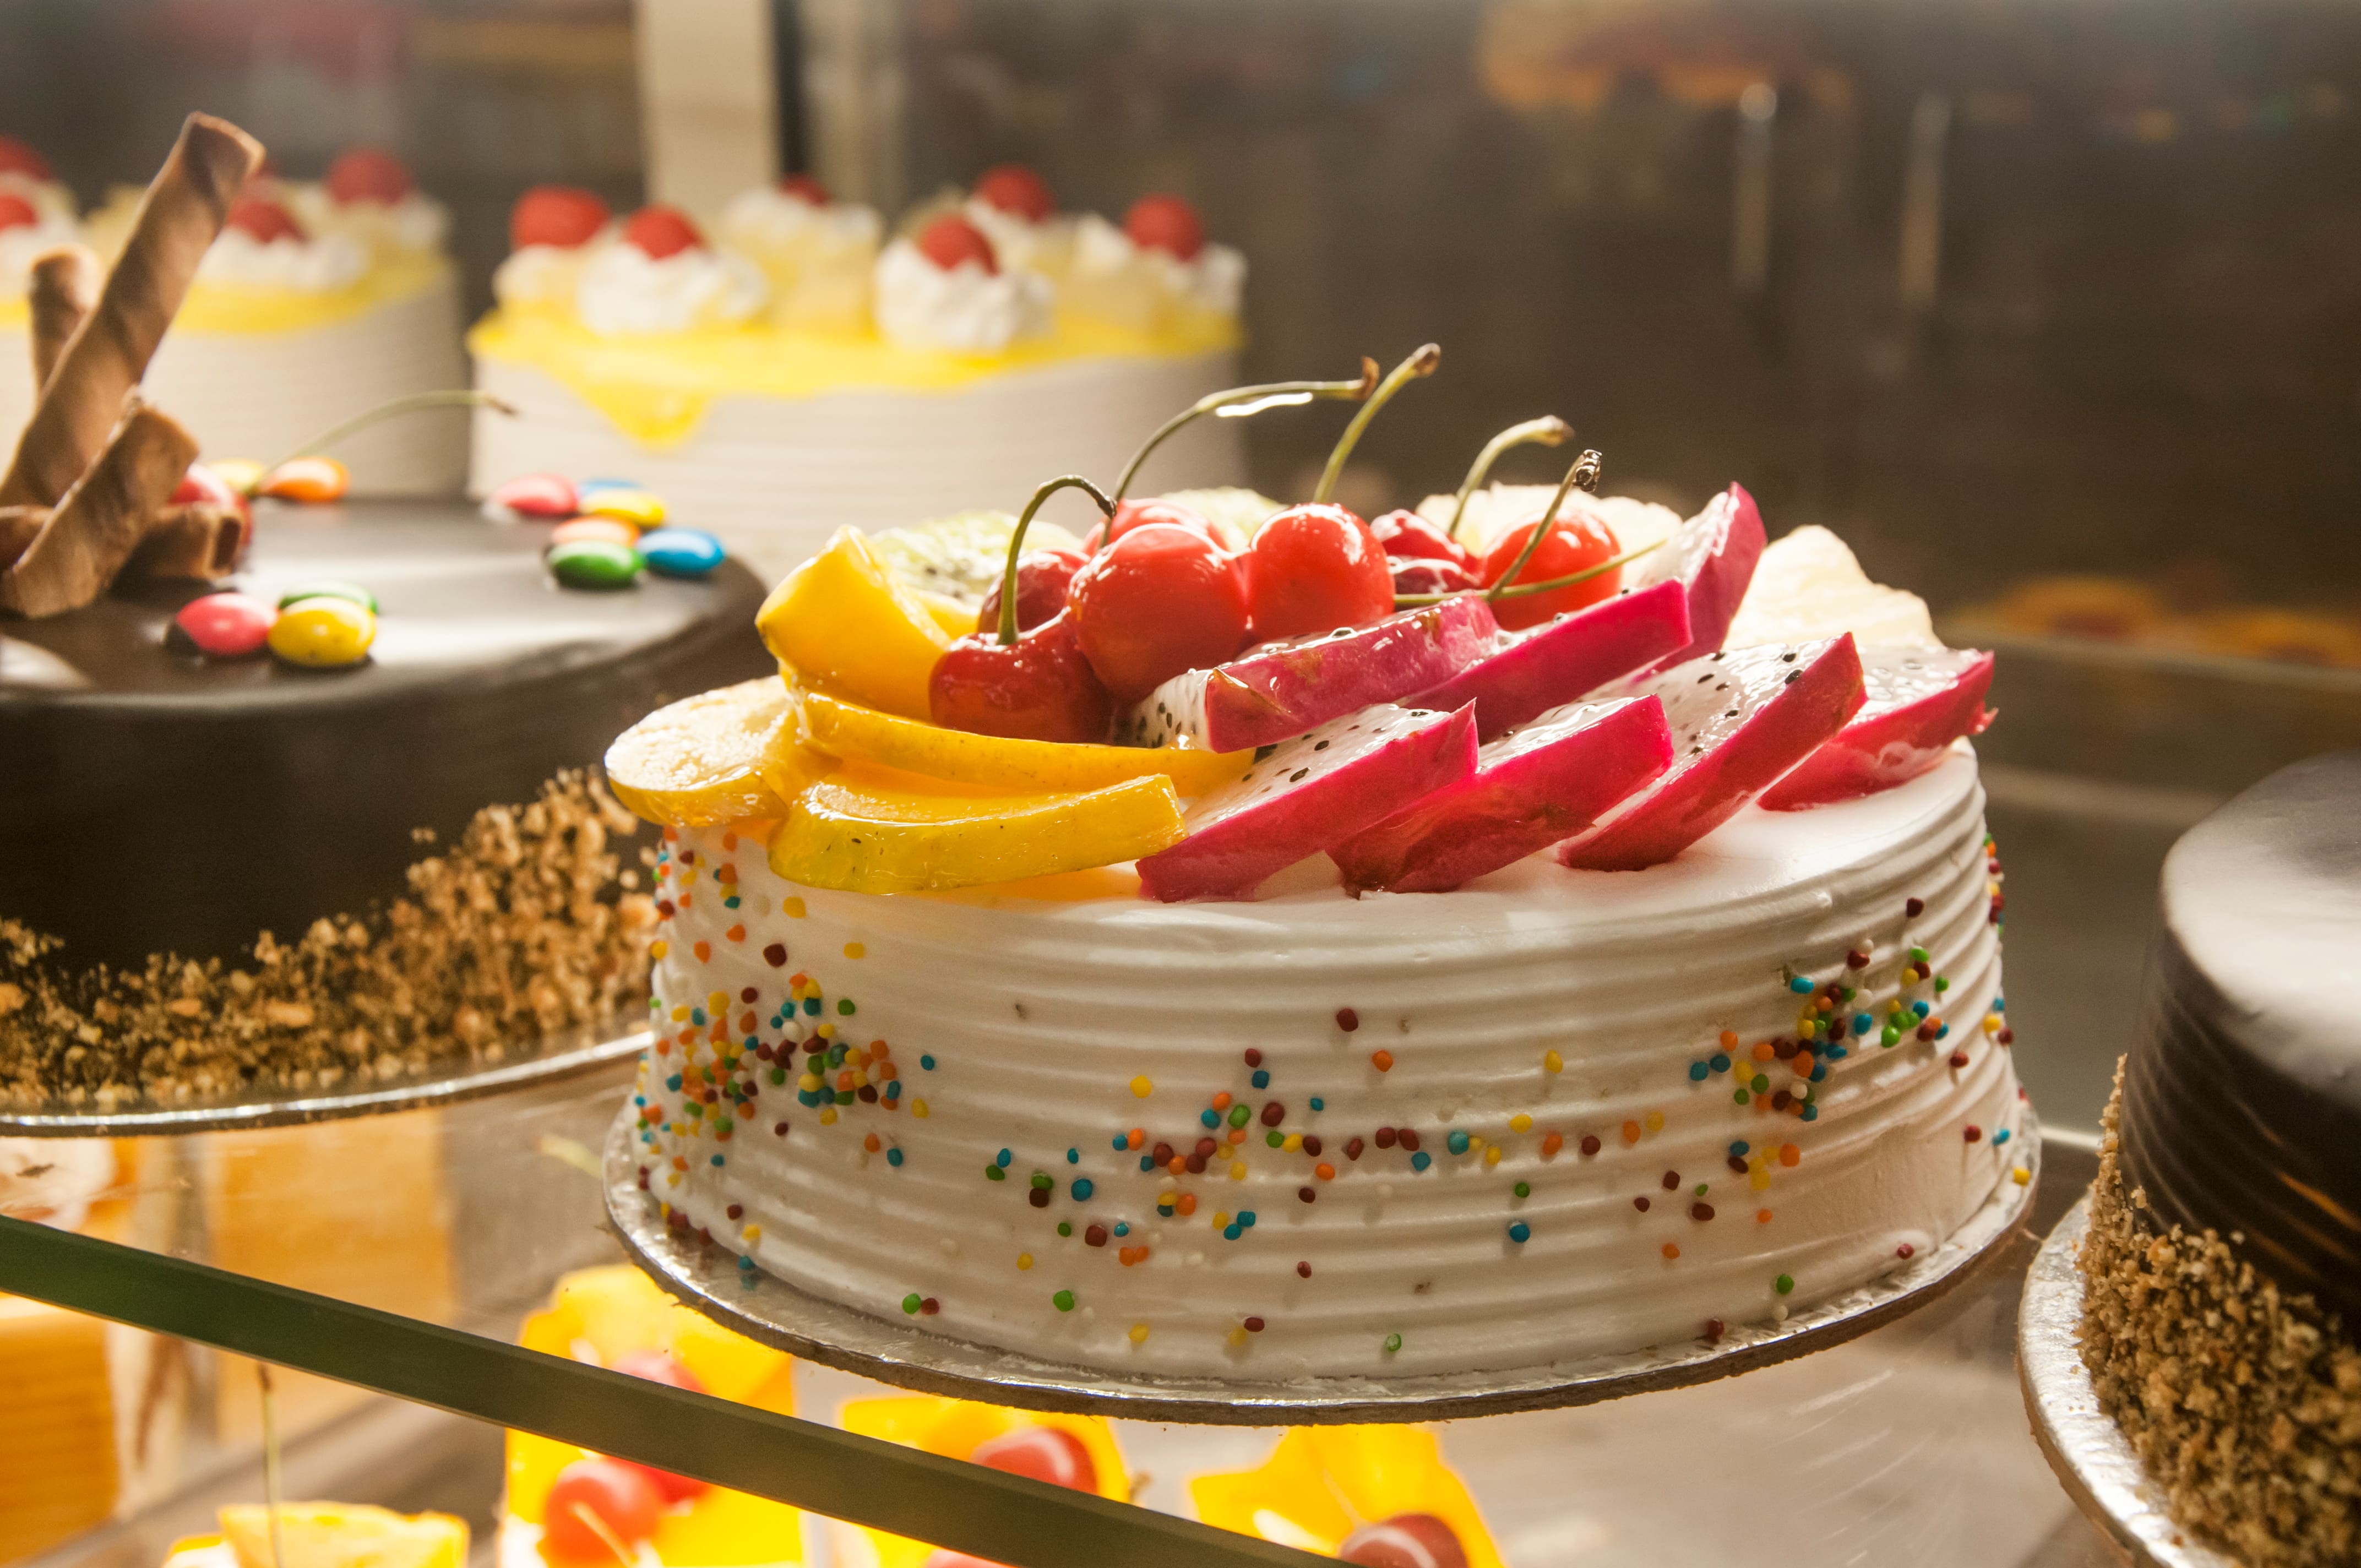 The Cake Basket, New Delhi, Shop No: 2 - Restaurant reviews